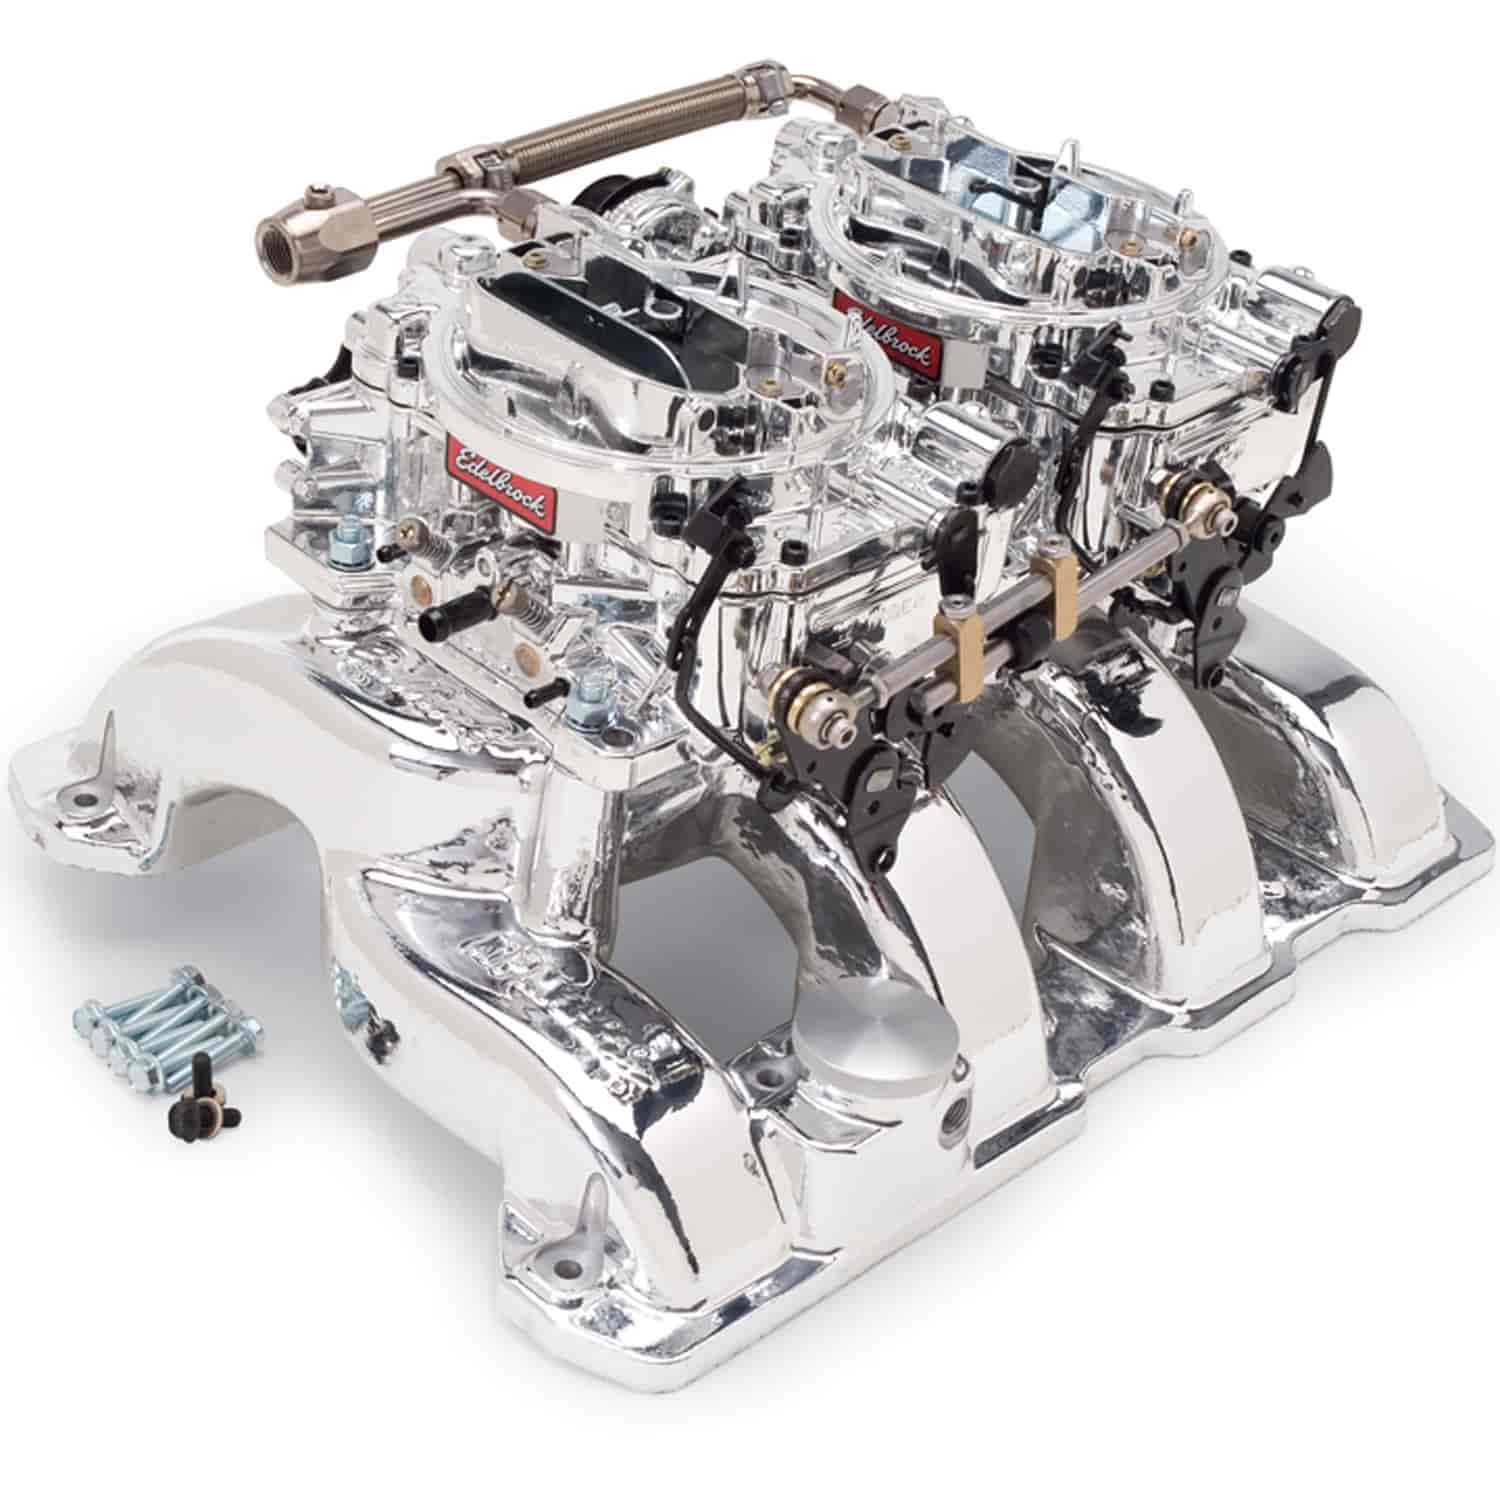 RPM Dual-Quad Manifold and CarbUuretor Kit for Chrysler 5.7L HEMI with Endurashine Finish